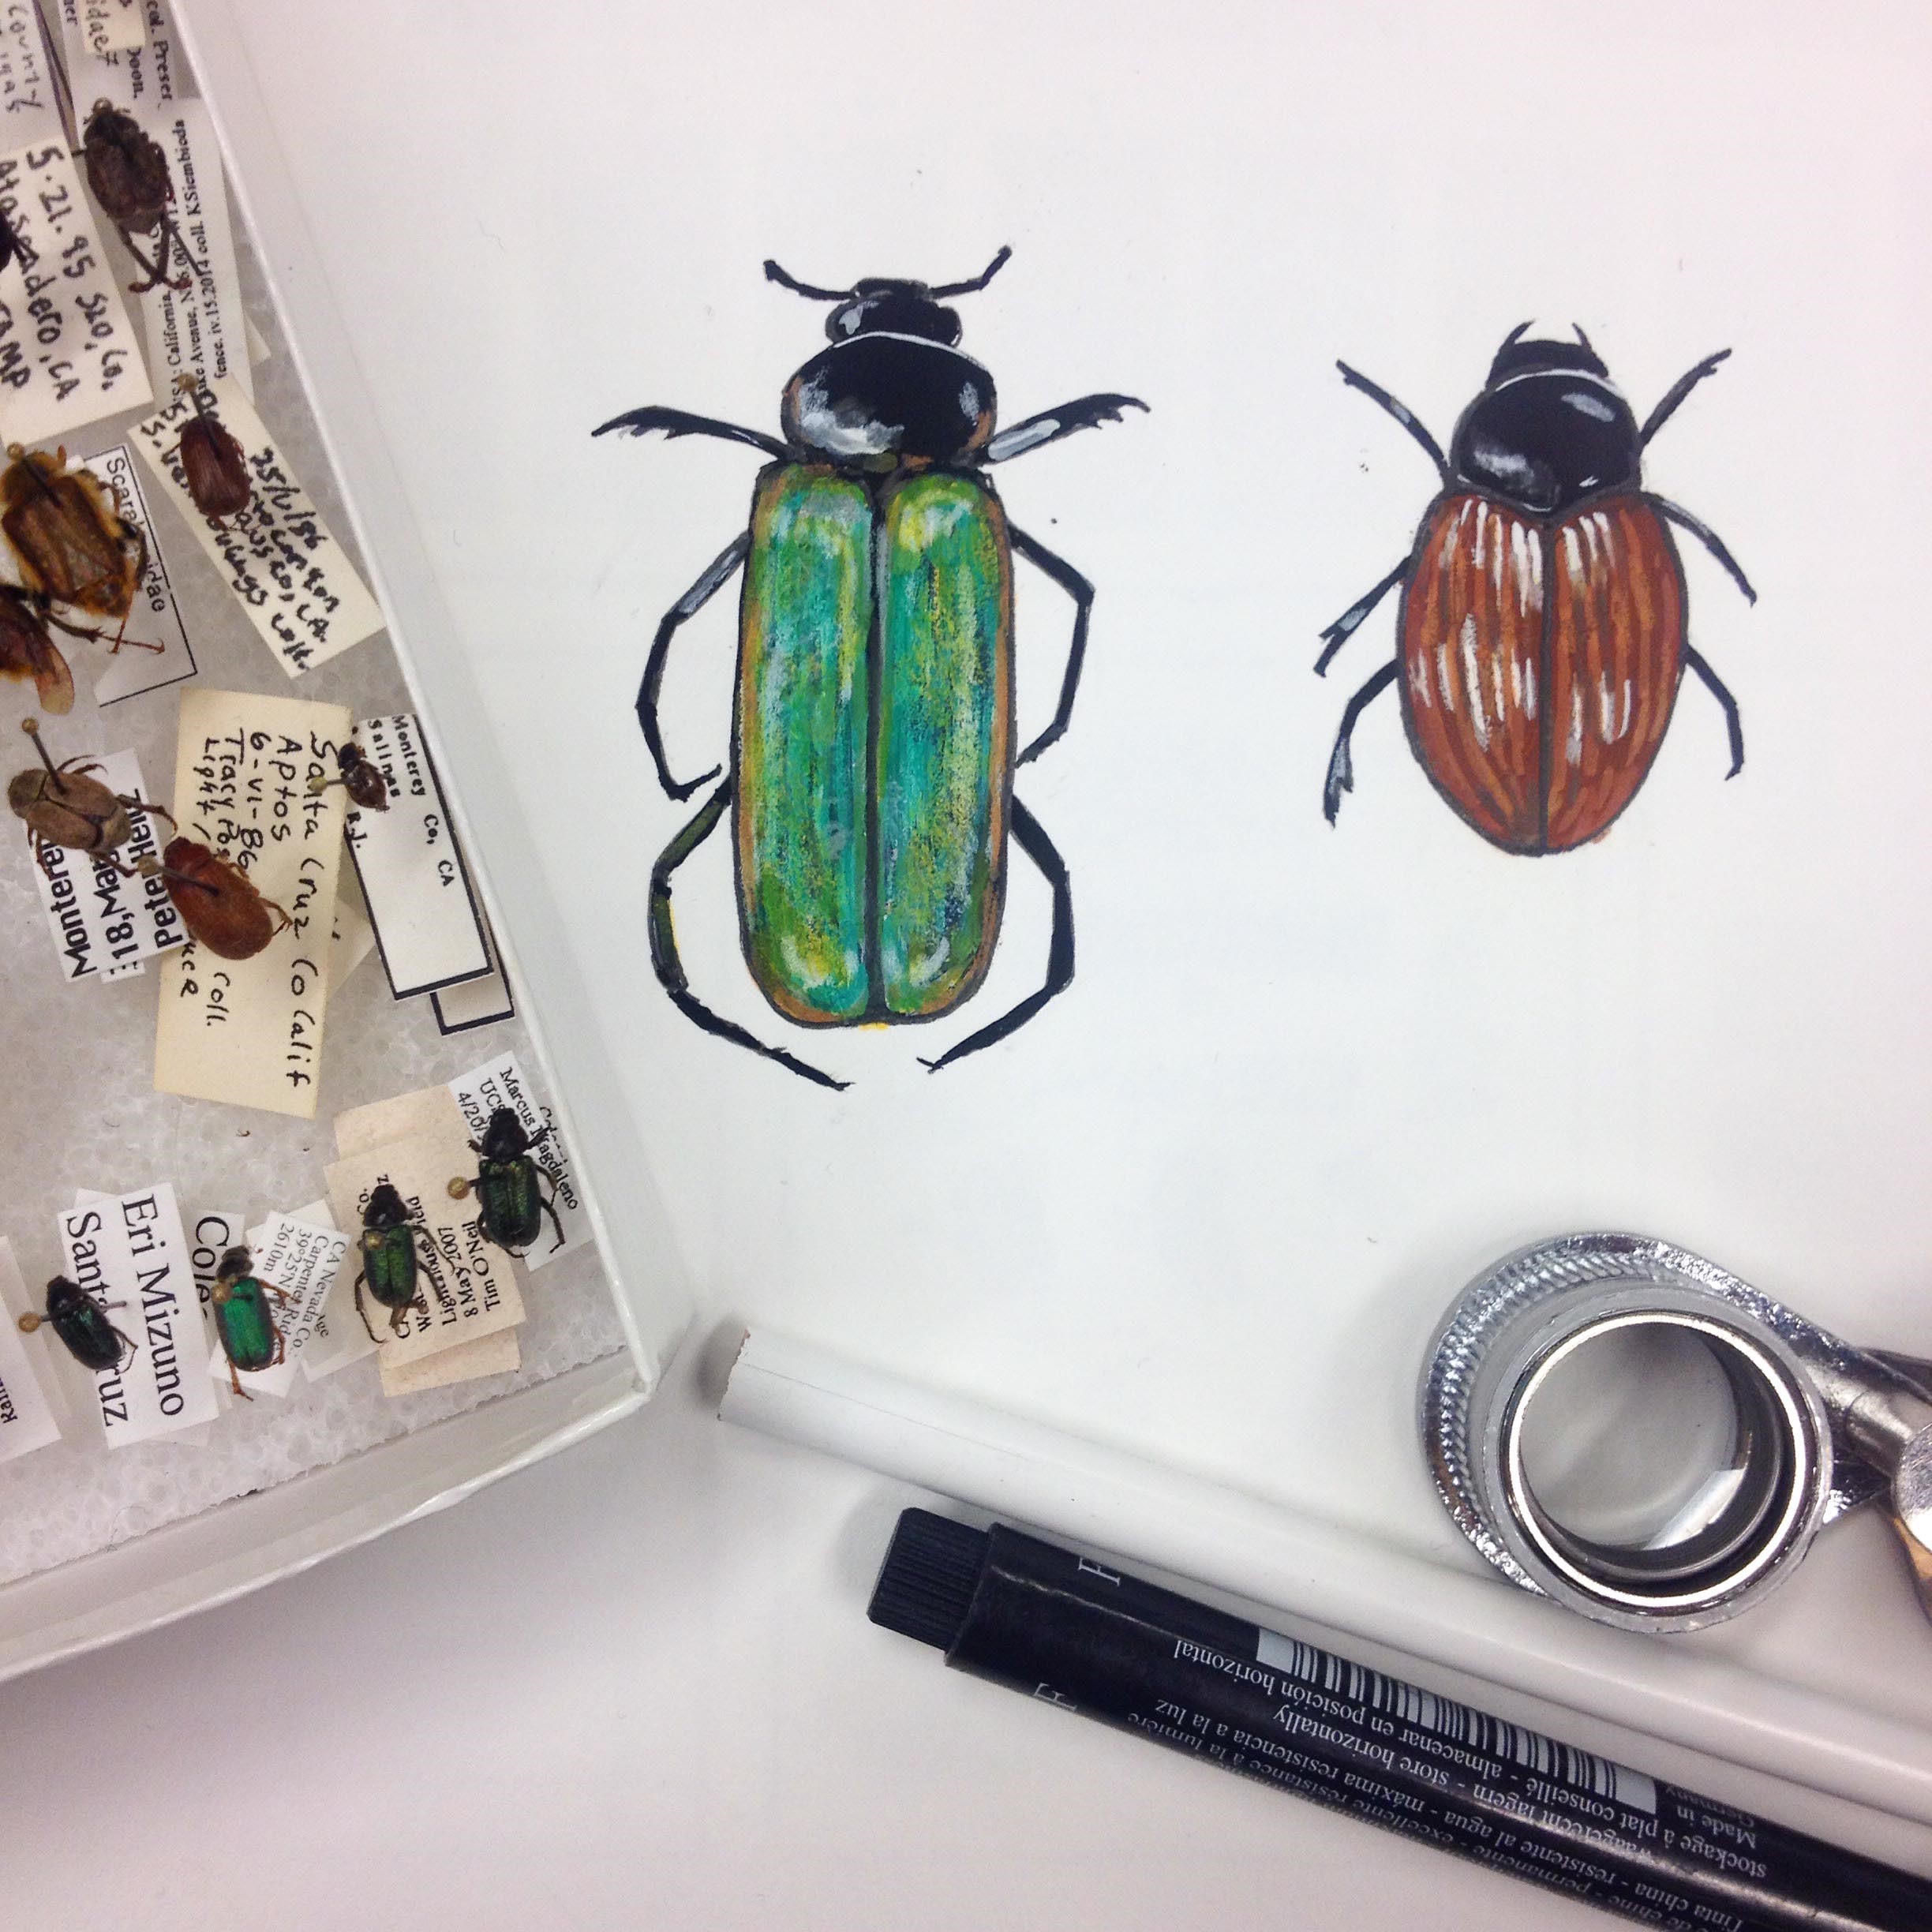 Beetles.jpg